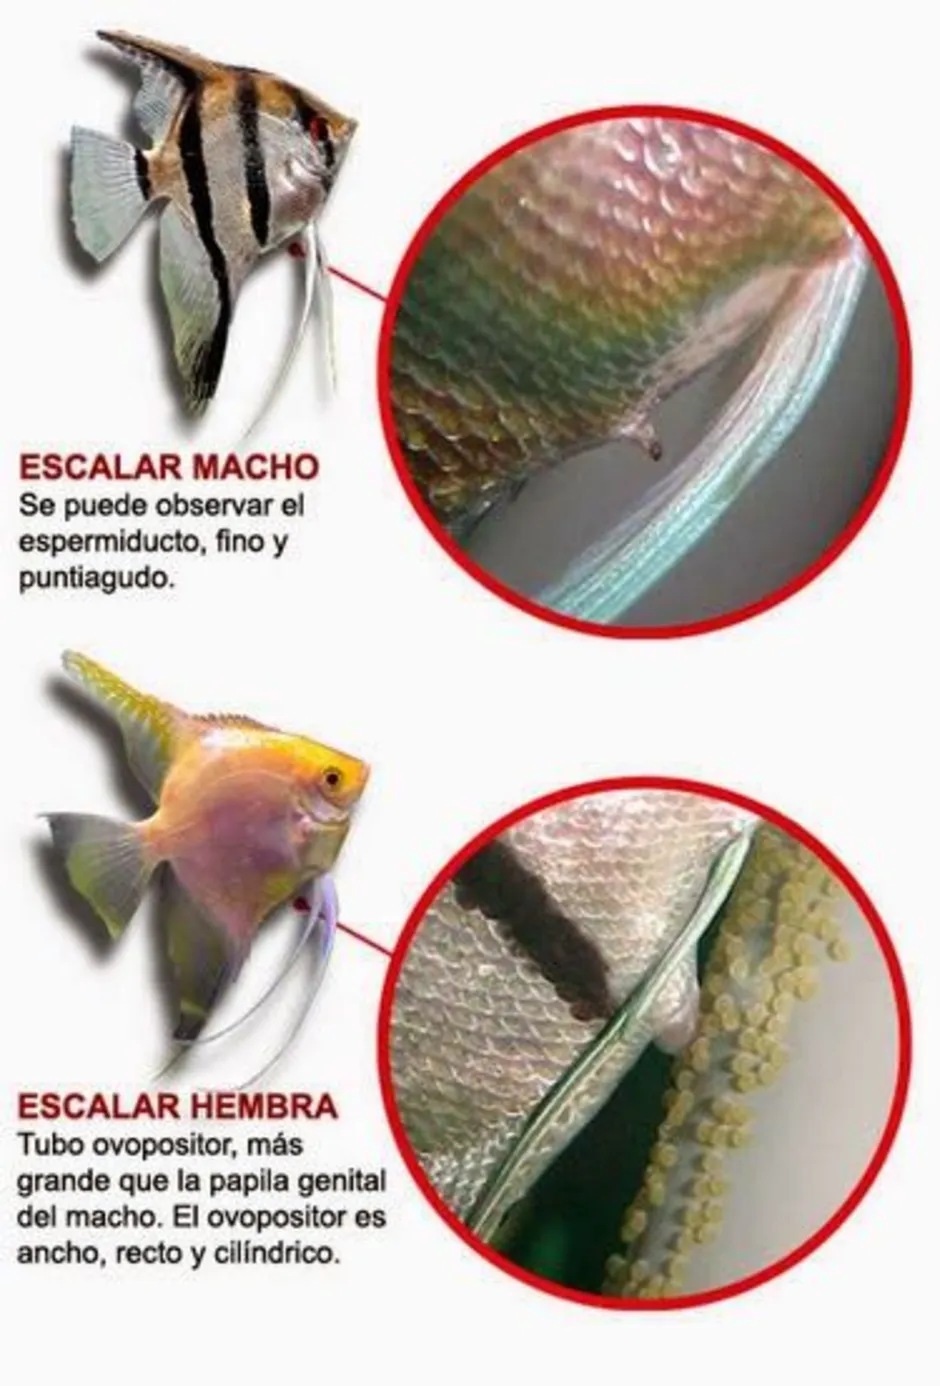 Скалярия самец и самка. Скалярия рыбка отличие самки от самца. Рыбки скалярий самец самка. Скалярии отличия самца от самки.